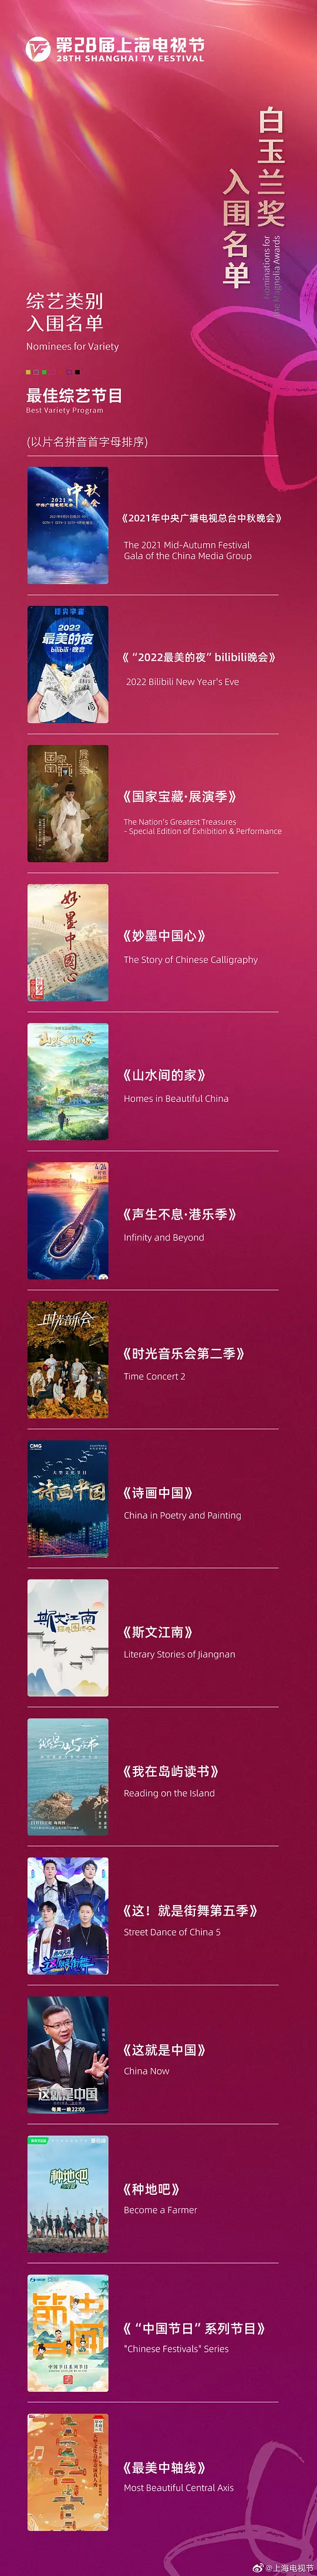 第28届上海电视节颁奖典礼电影在线观看高清